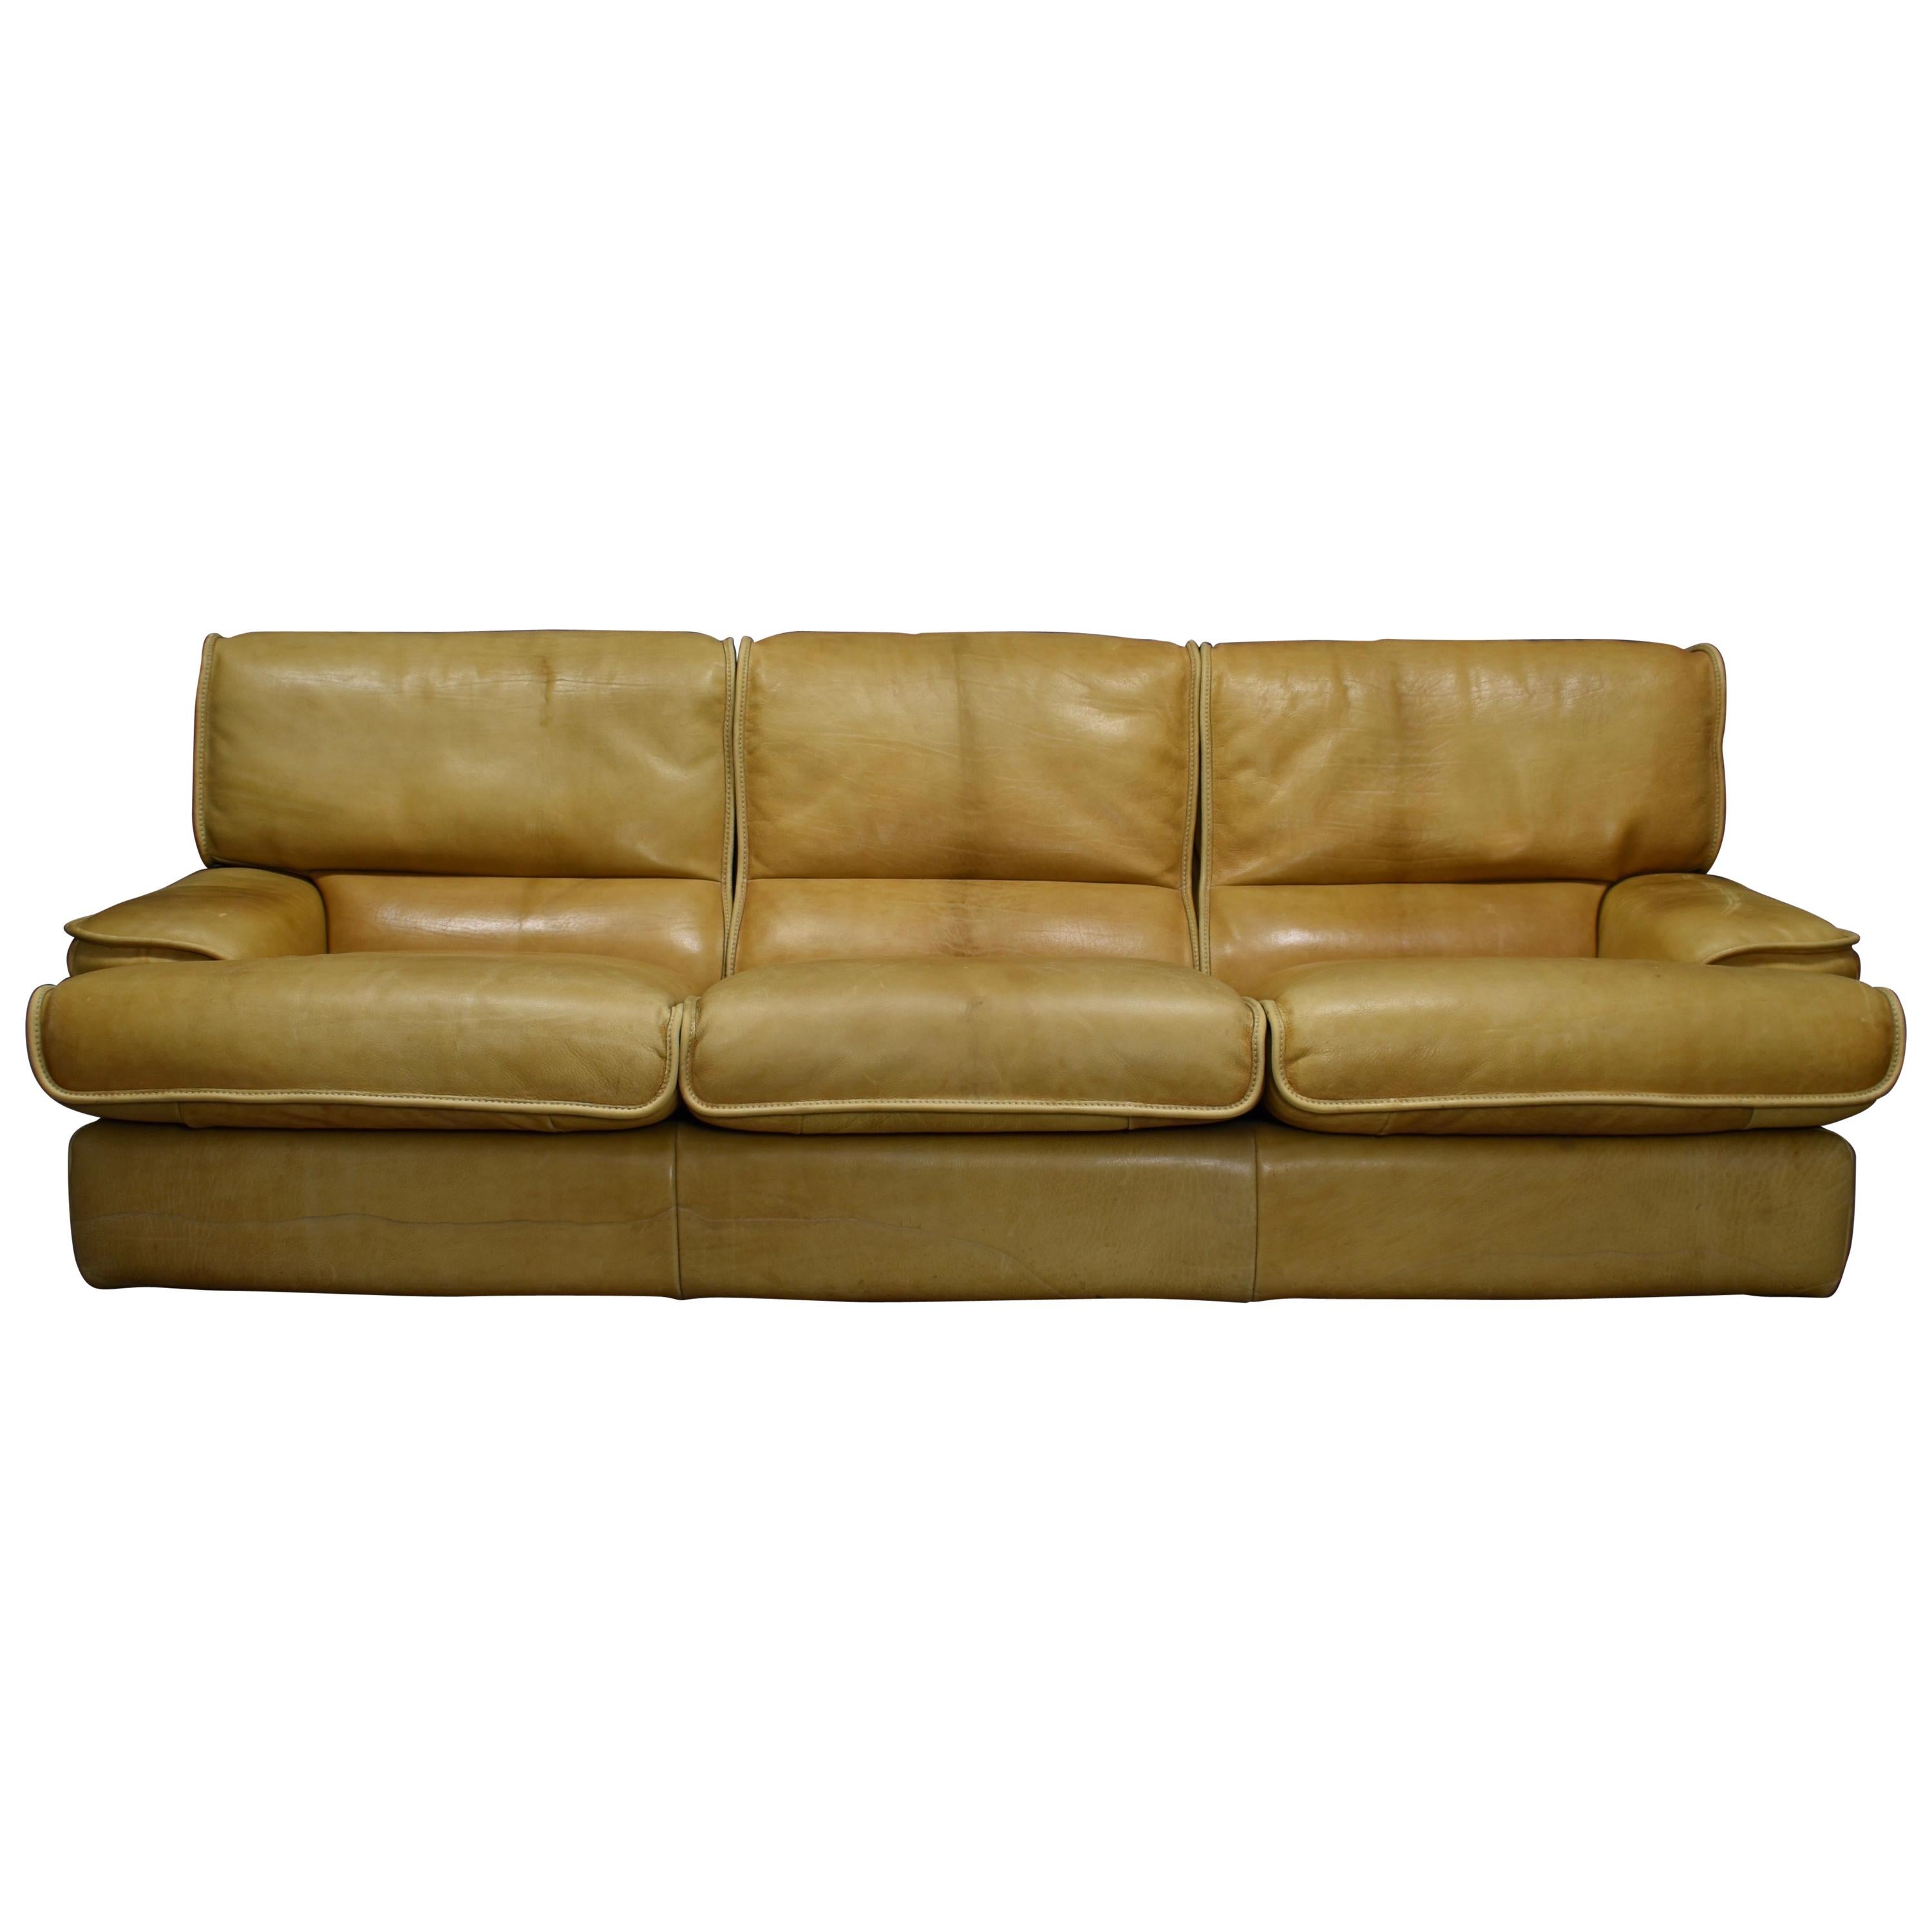 Italian Tan Leather Three-Seat Sofa, circa 1970